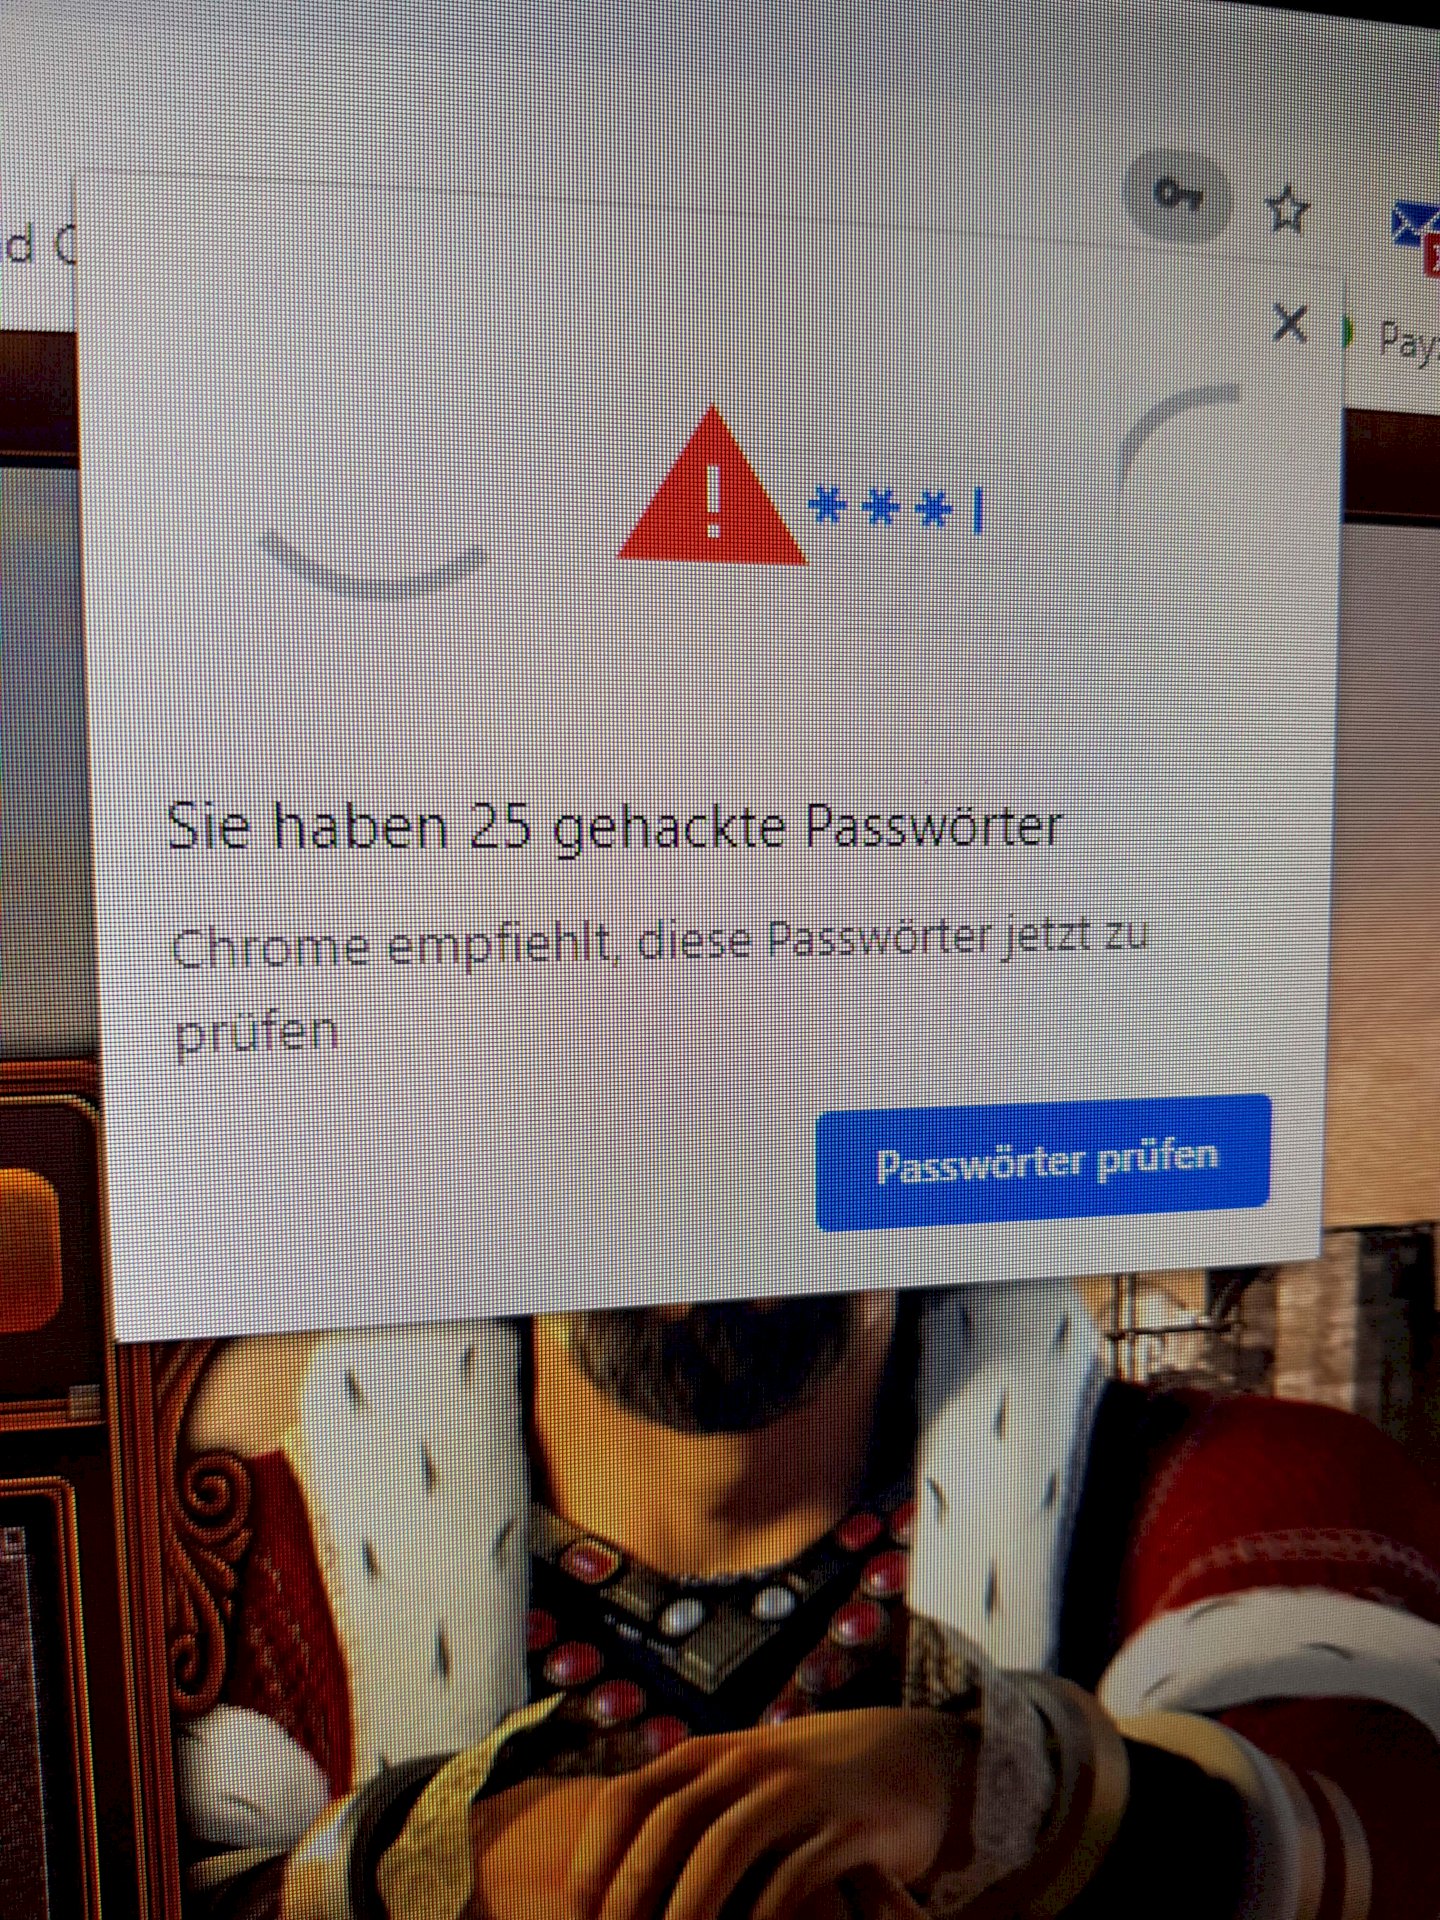 Massive data breach on Google Chrome or a hacker attack